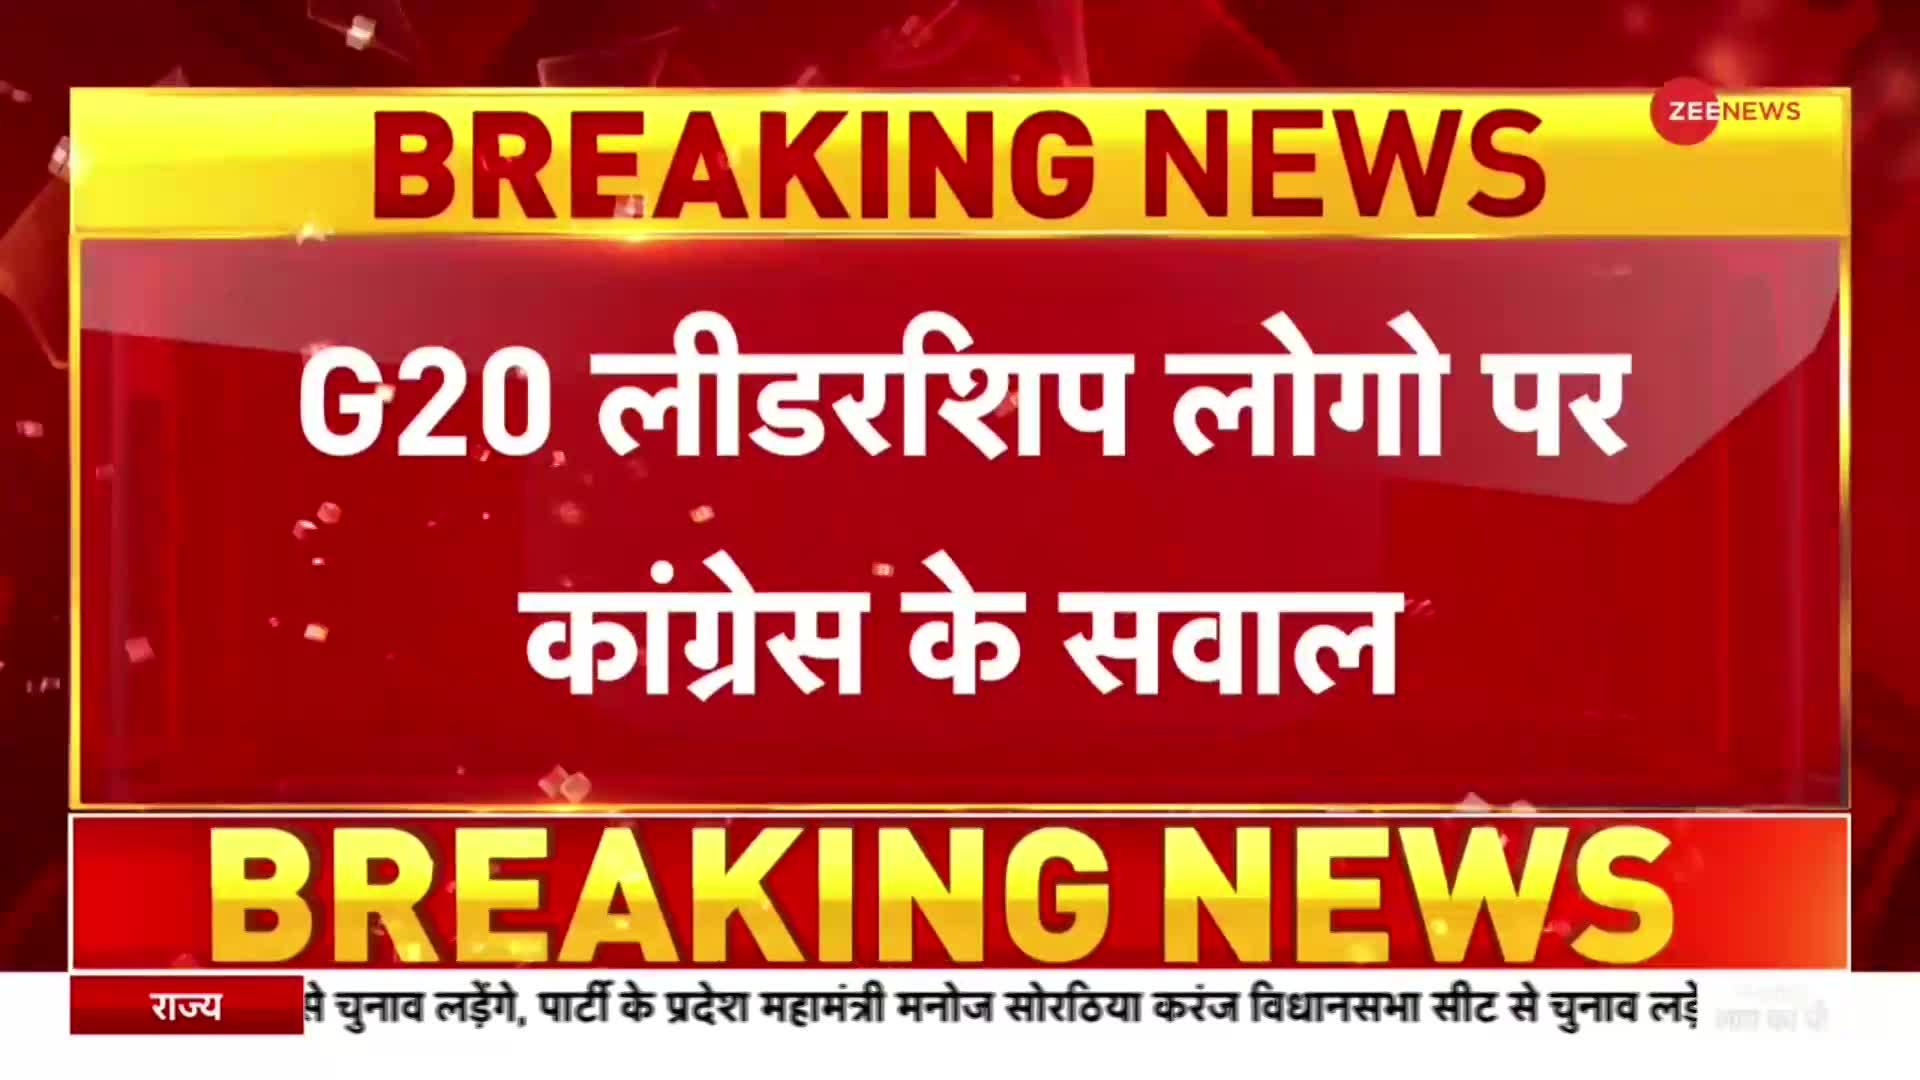 कांग्रेस नेता जयराम रमेश ने जी-20 के लोगो पर उठाए सवाल, BJP पर बोला हमला